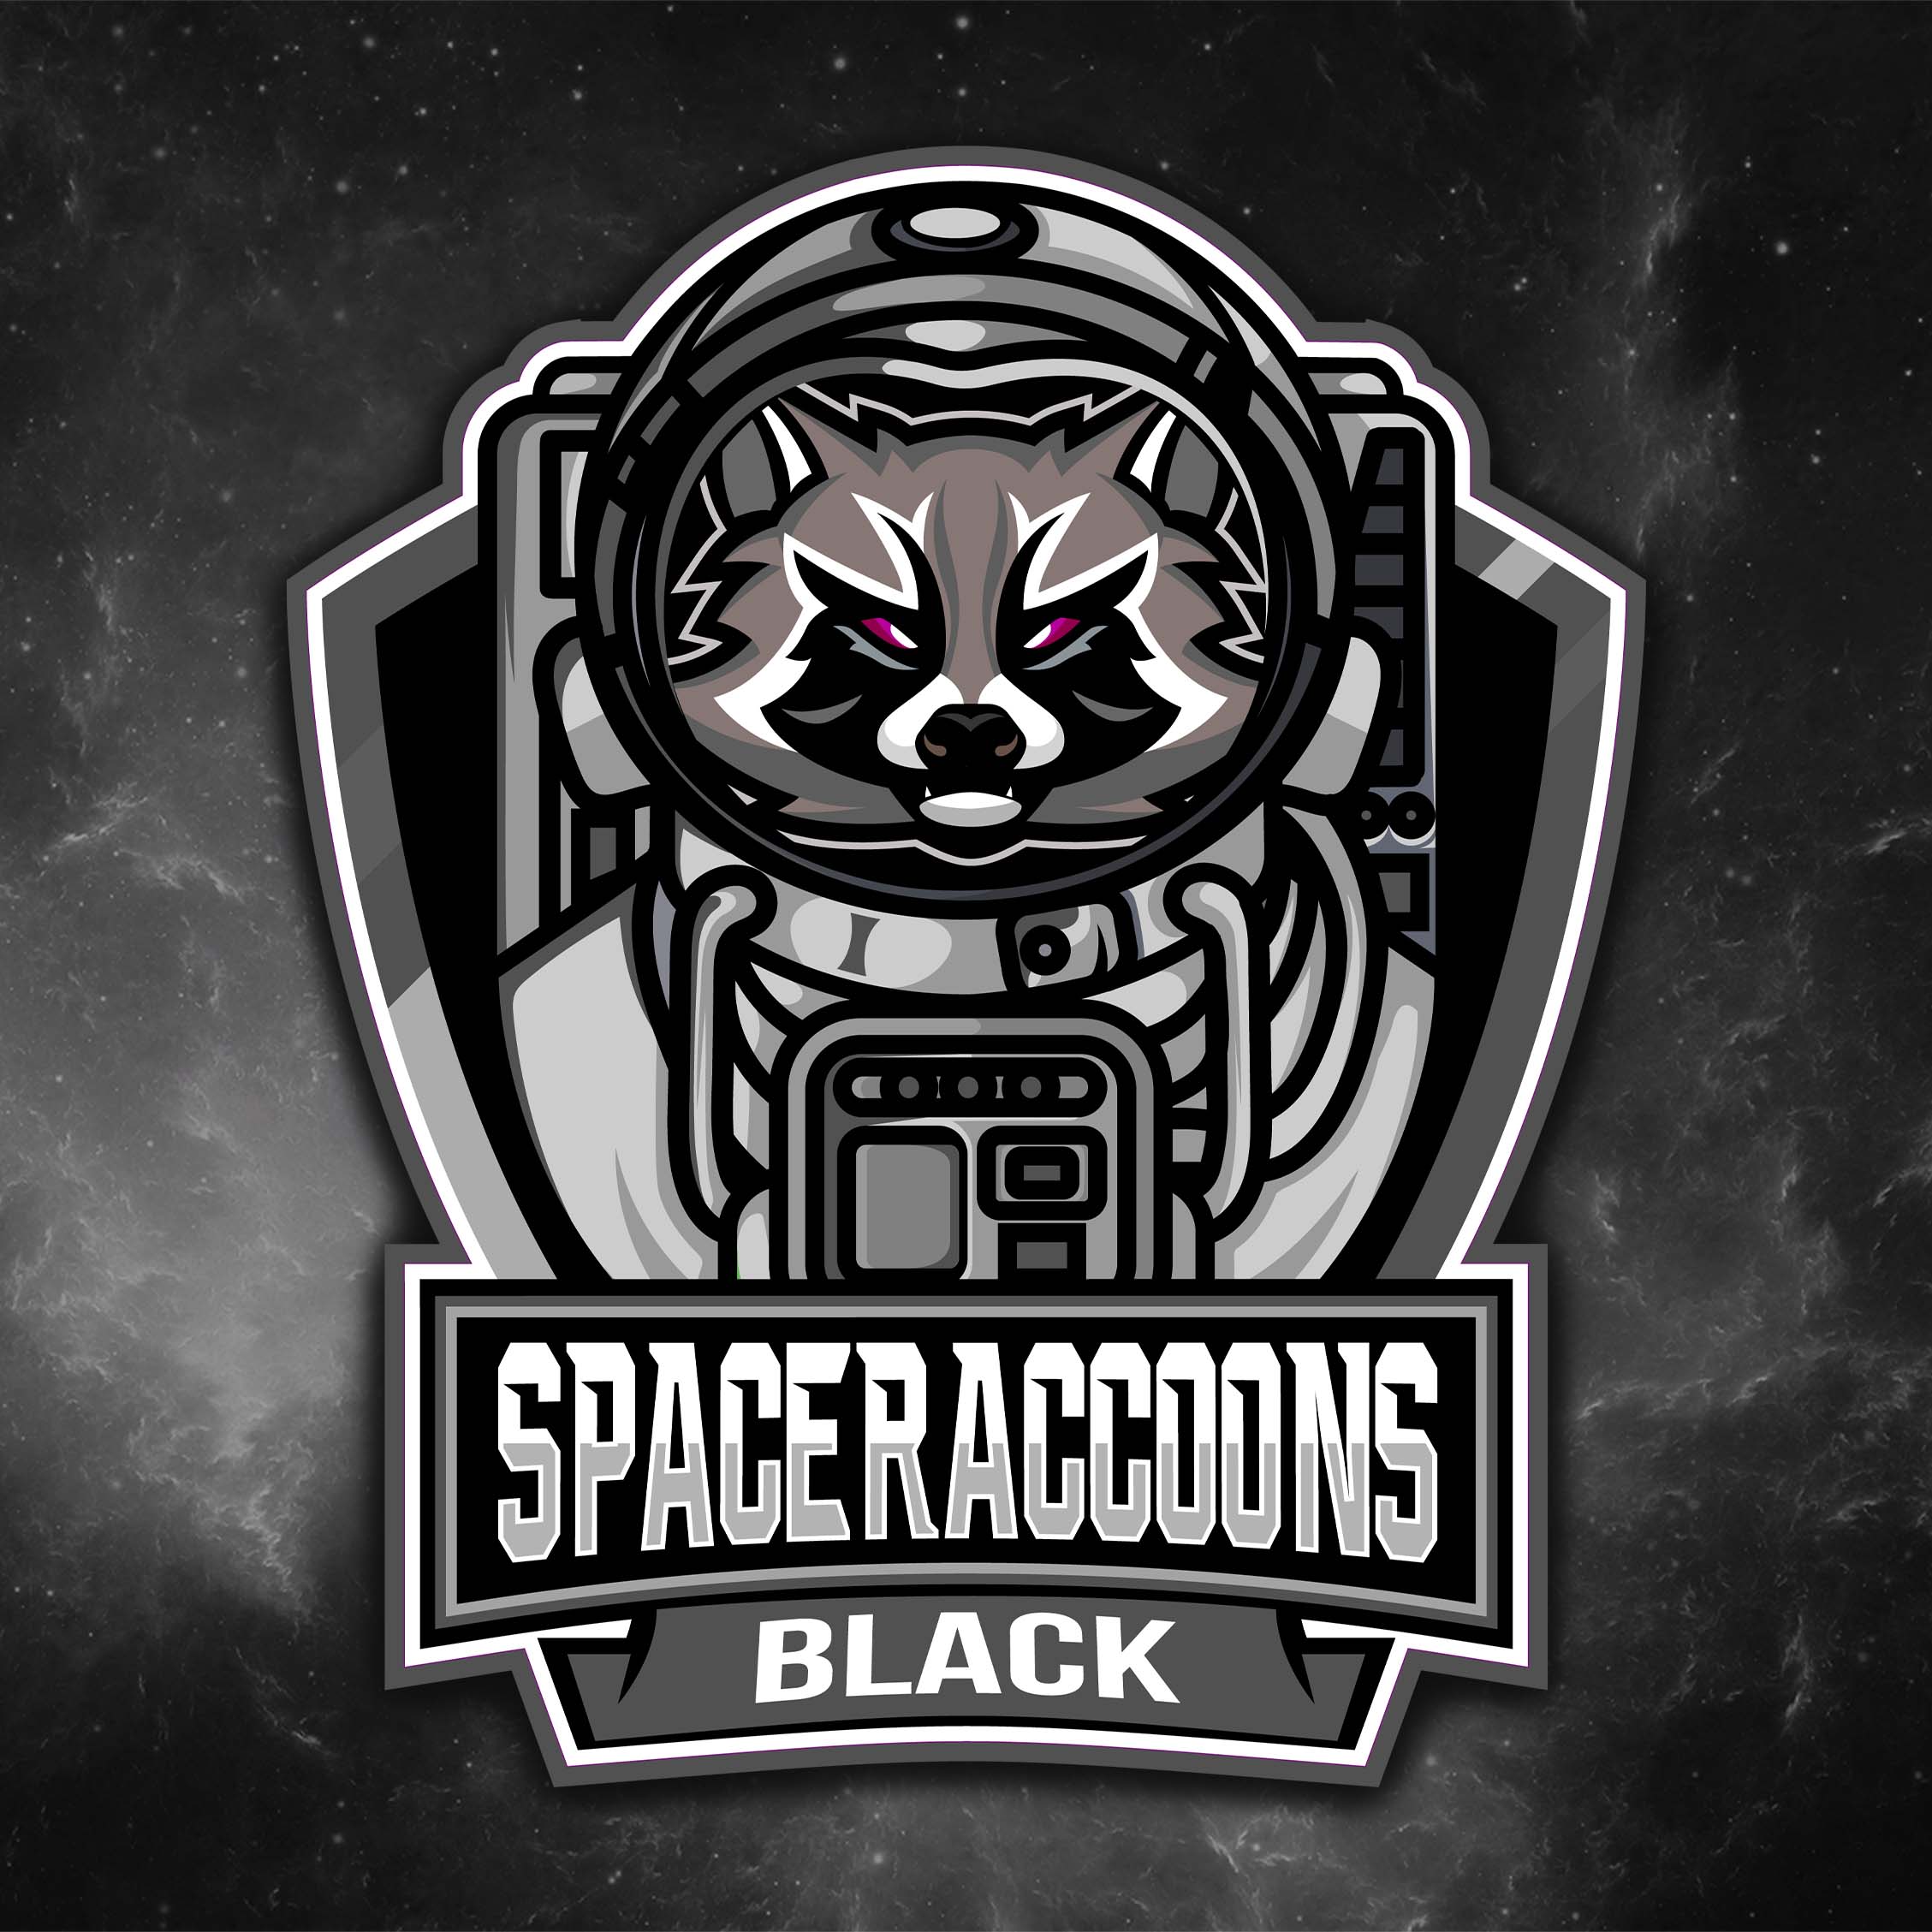 Team Black stößt zu den Spaceraccoons dazu